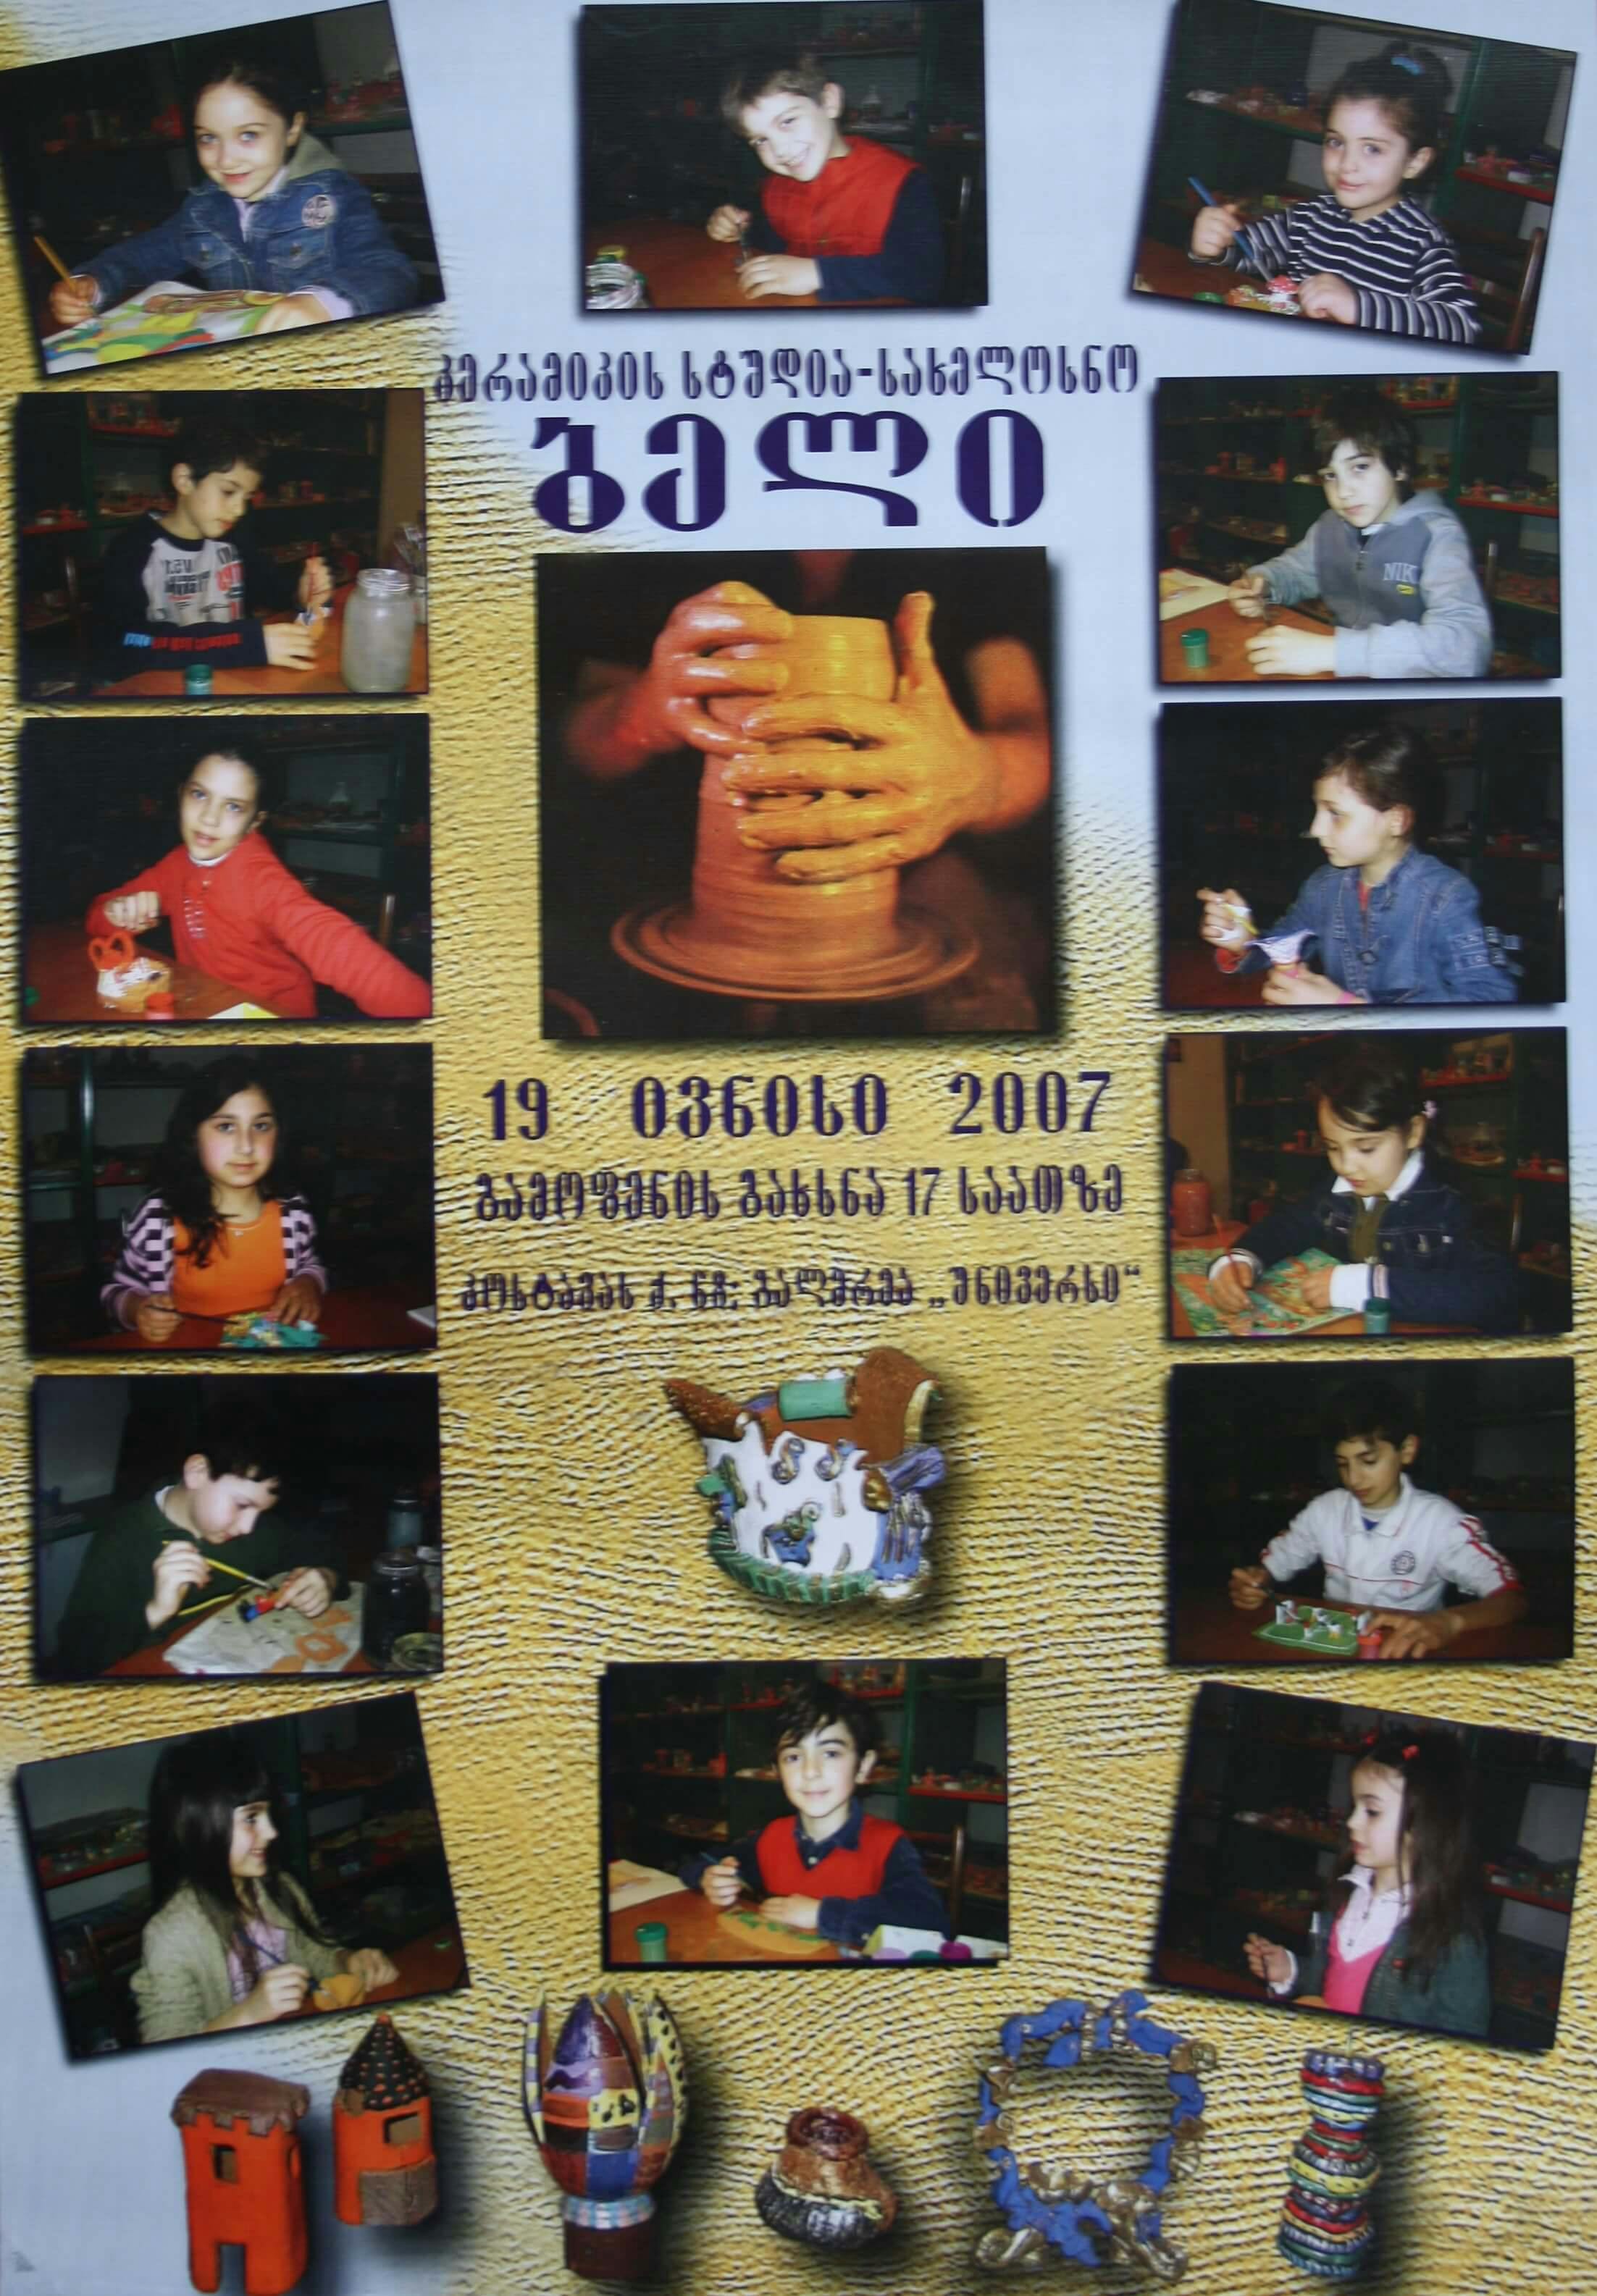 კერამიკის სტუდია-სახელოსნო "ბელი" 19 ივნისი, 2007 წ